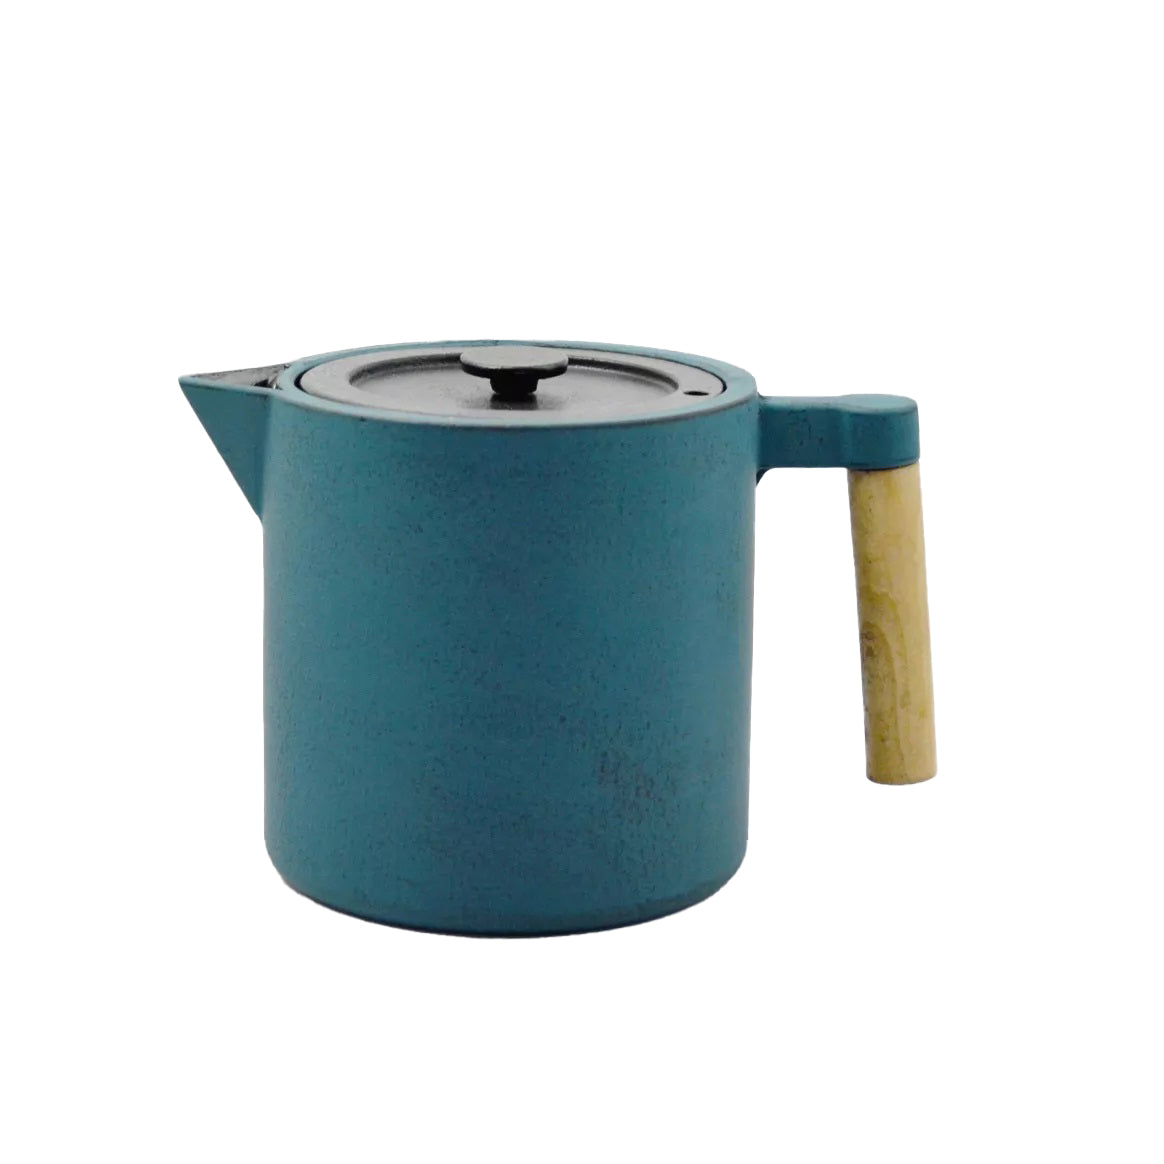 Gusseisere Kanne für Tee & Kaffee in tollen Farben, Fassungsvermögen 0,9 L